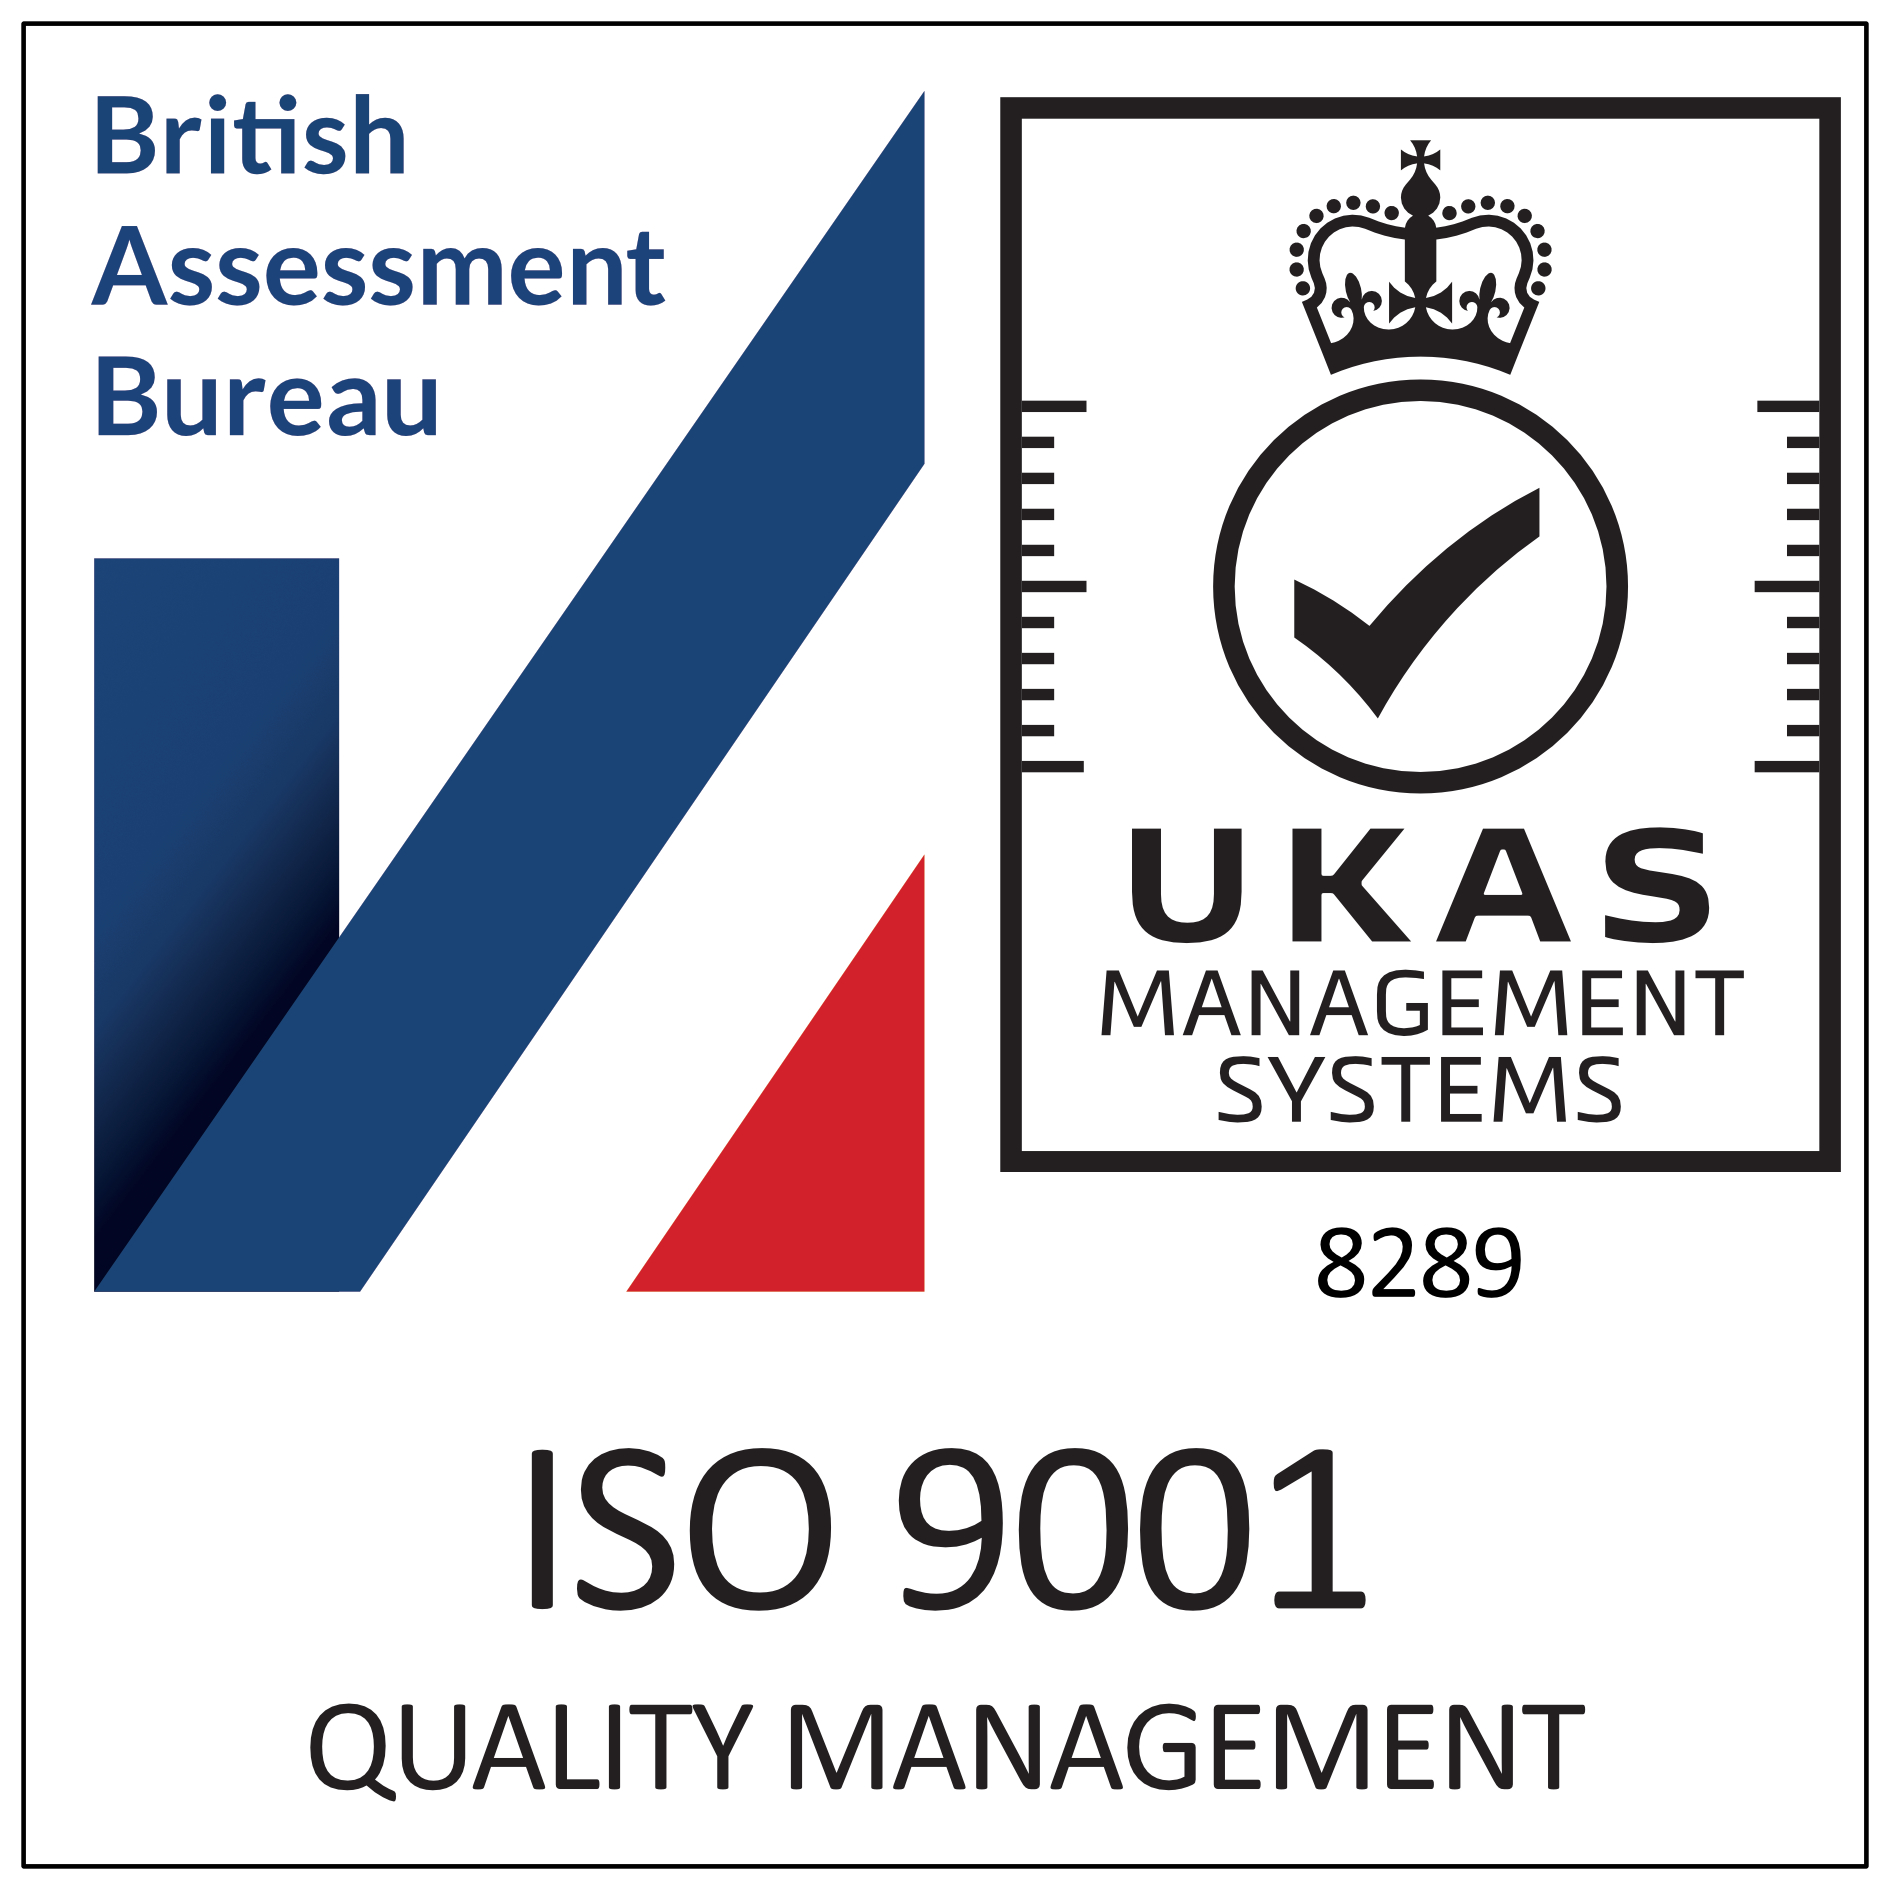 ISO 9001 award